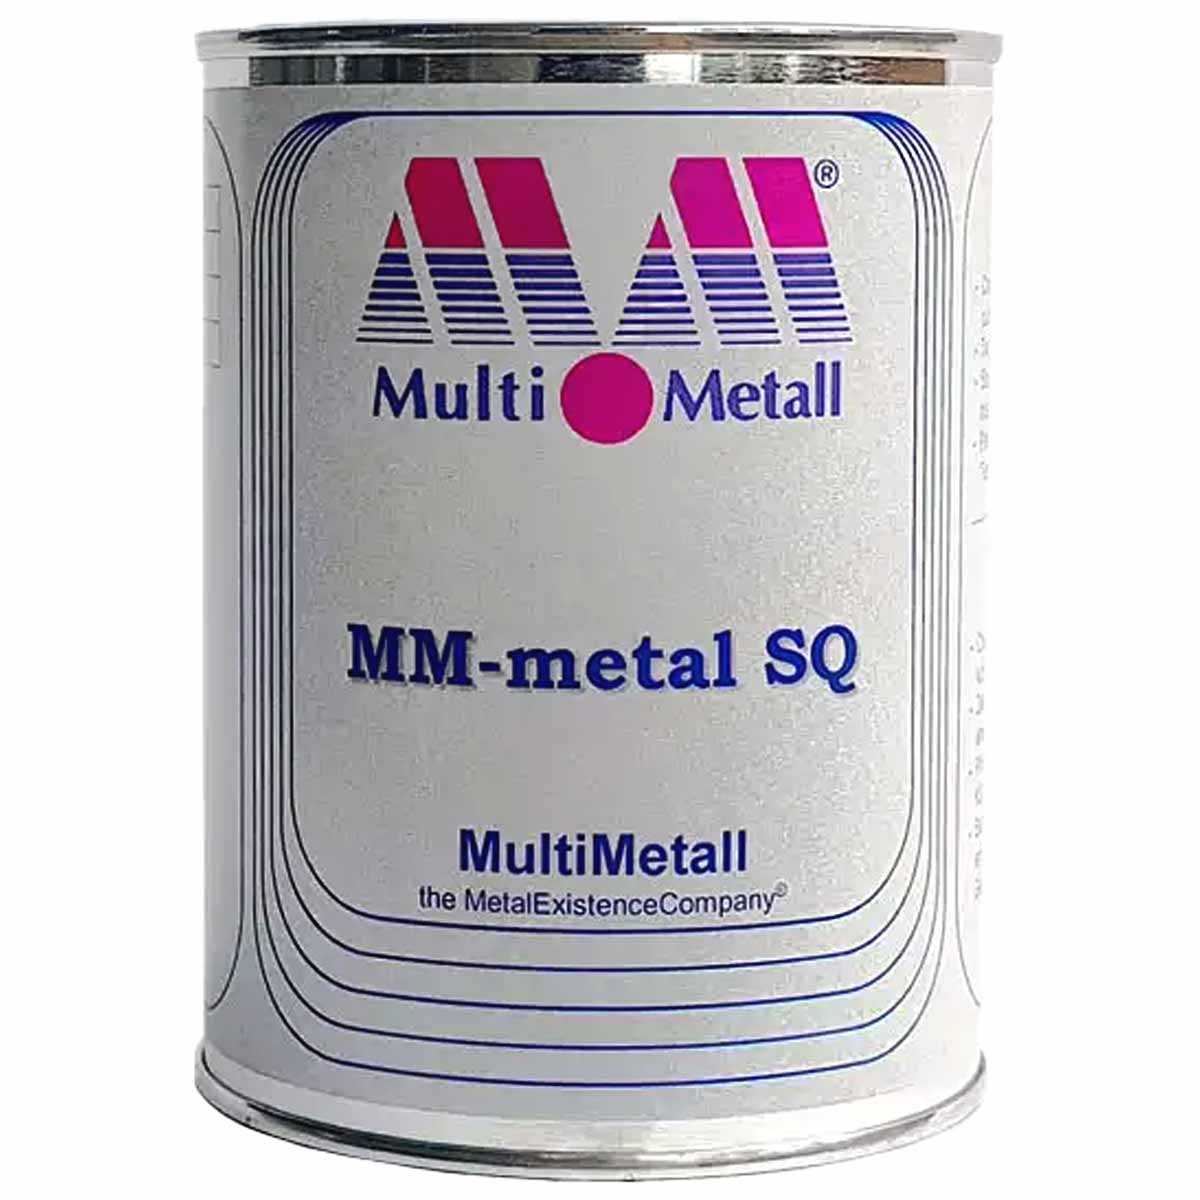 پودر فلز آهن مولتی متال MULTI-METALL MM-METAL SQ